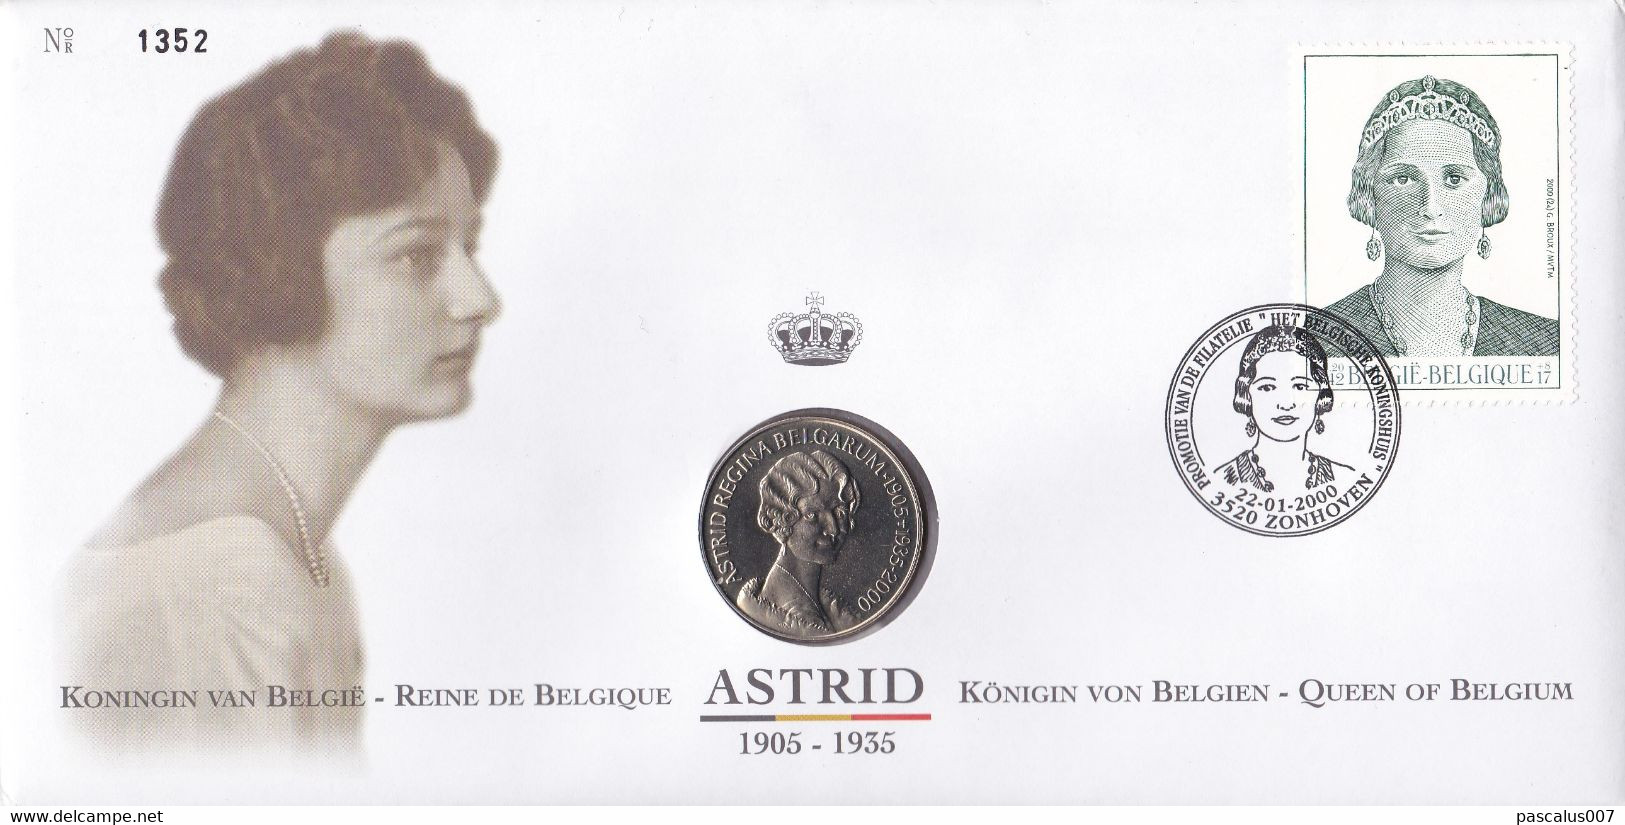 15 2879  NS FDC 1352  Belgique  Numisletter  Royal Dynastie Couronne Reine Astrid 3520 Zonhoven 22-1-2000 - Numisletter